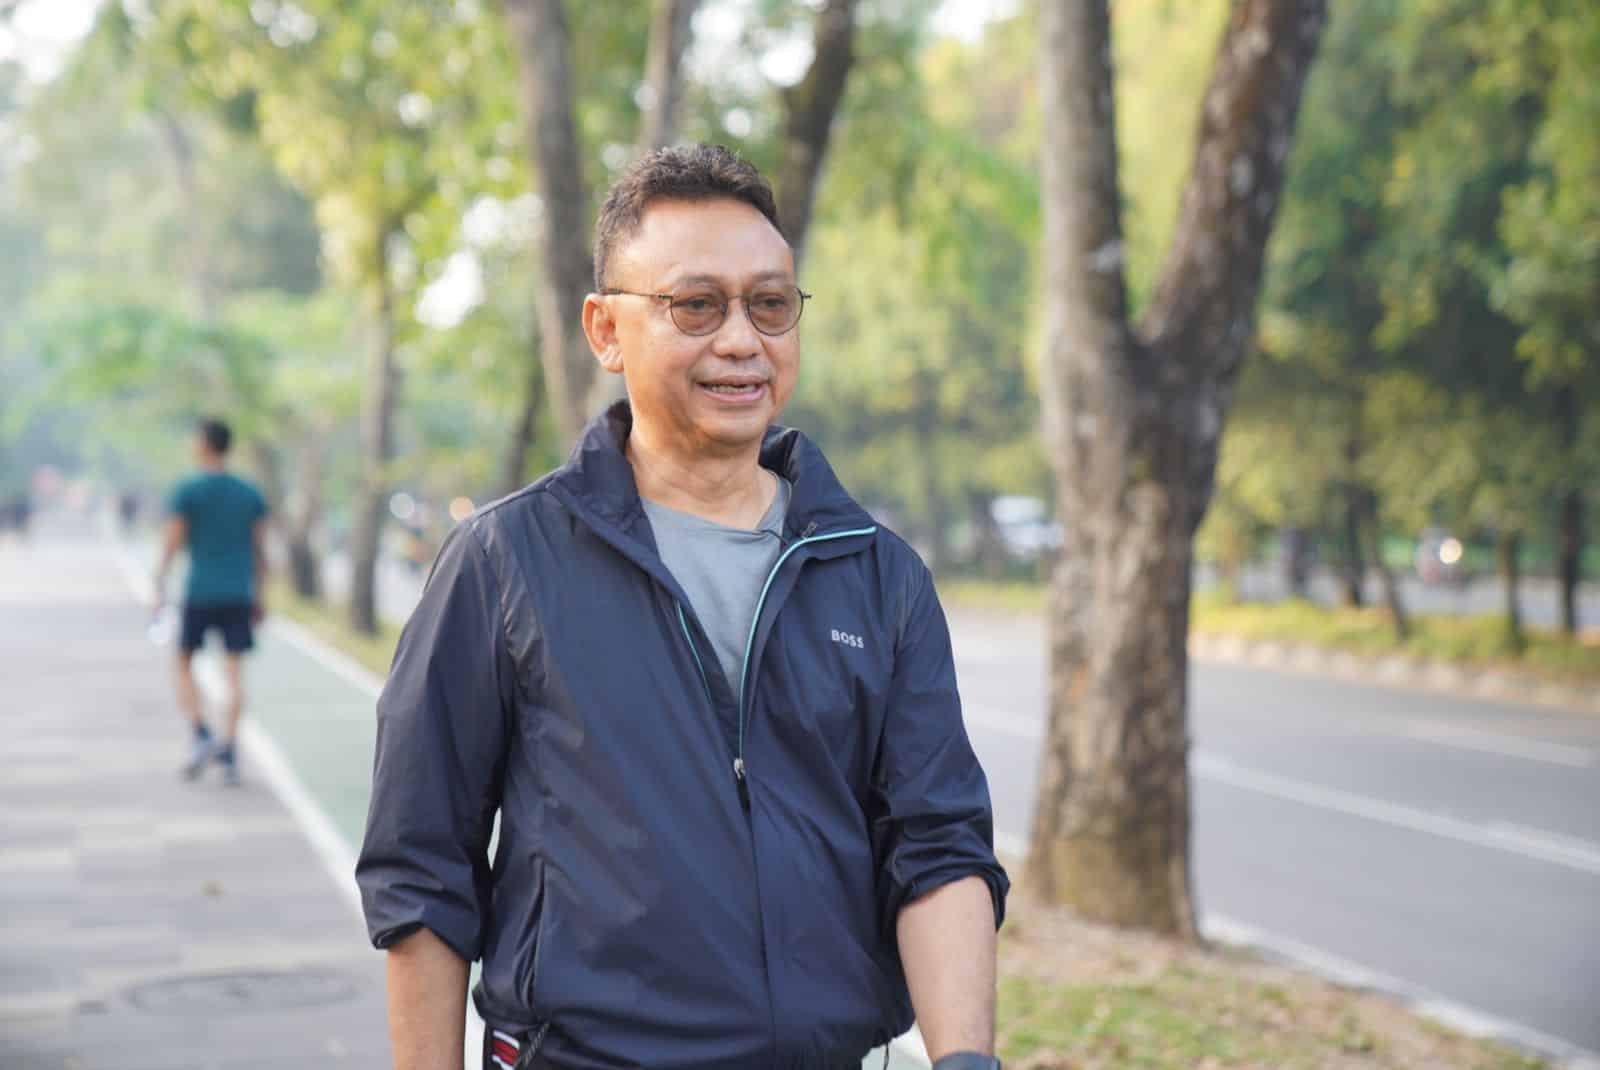 Wali Kota Pontianak, Edi Rusdi Kamtono berolahraga sembari memantau lingkungan dan pembangunan kota. (Foto: Indri)